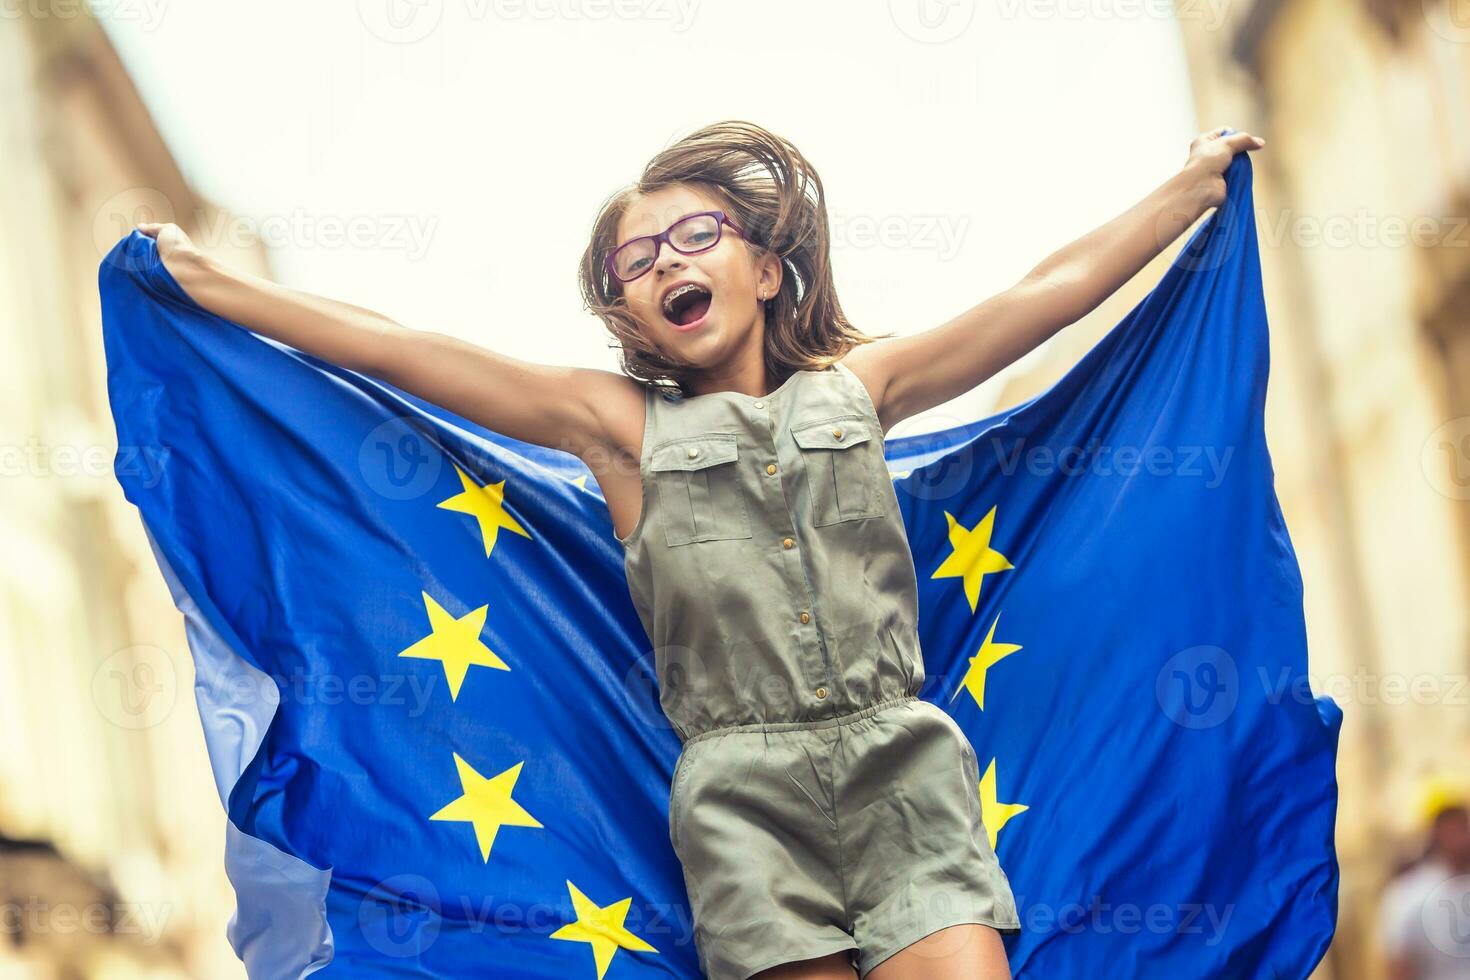 carino contento giovane ragazza con il bandiera di il europeo unione foto